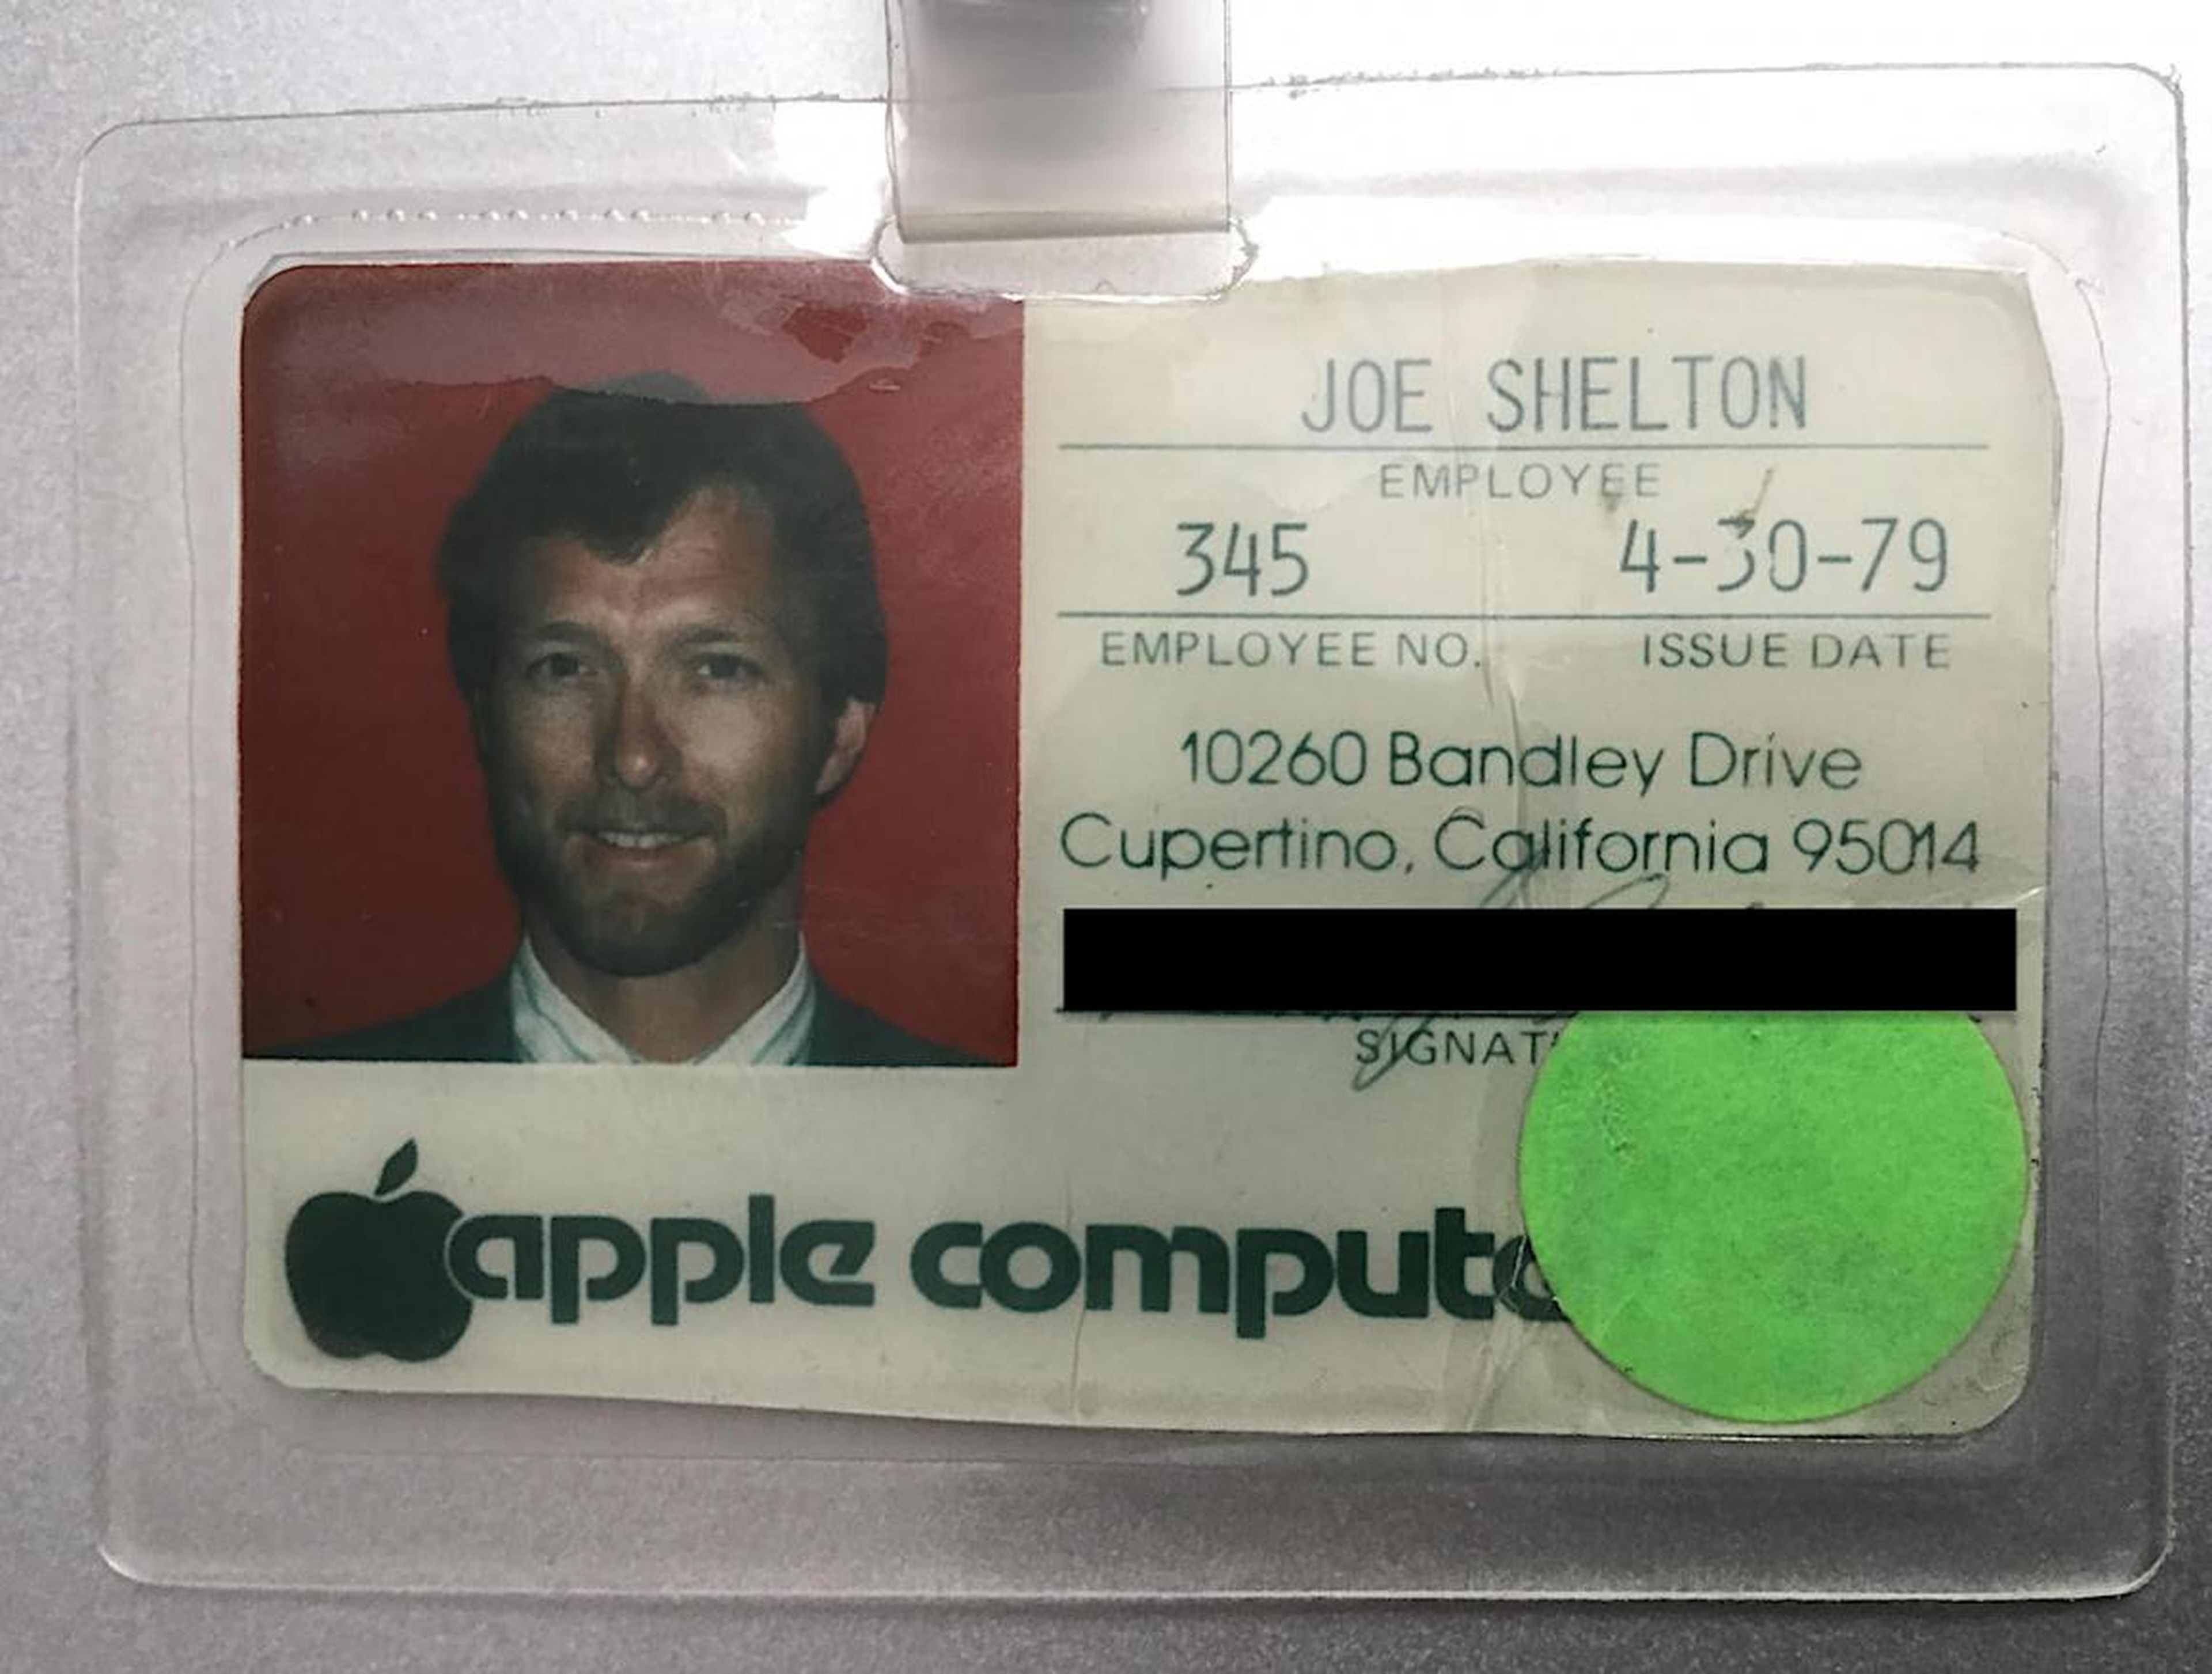 Aunque el número de empleados de Shelton era de 345, debido a la rotación de personal sólo había unas 100 personas en Apple cuando se incorporó en 1979.